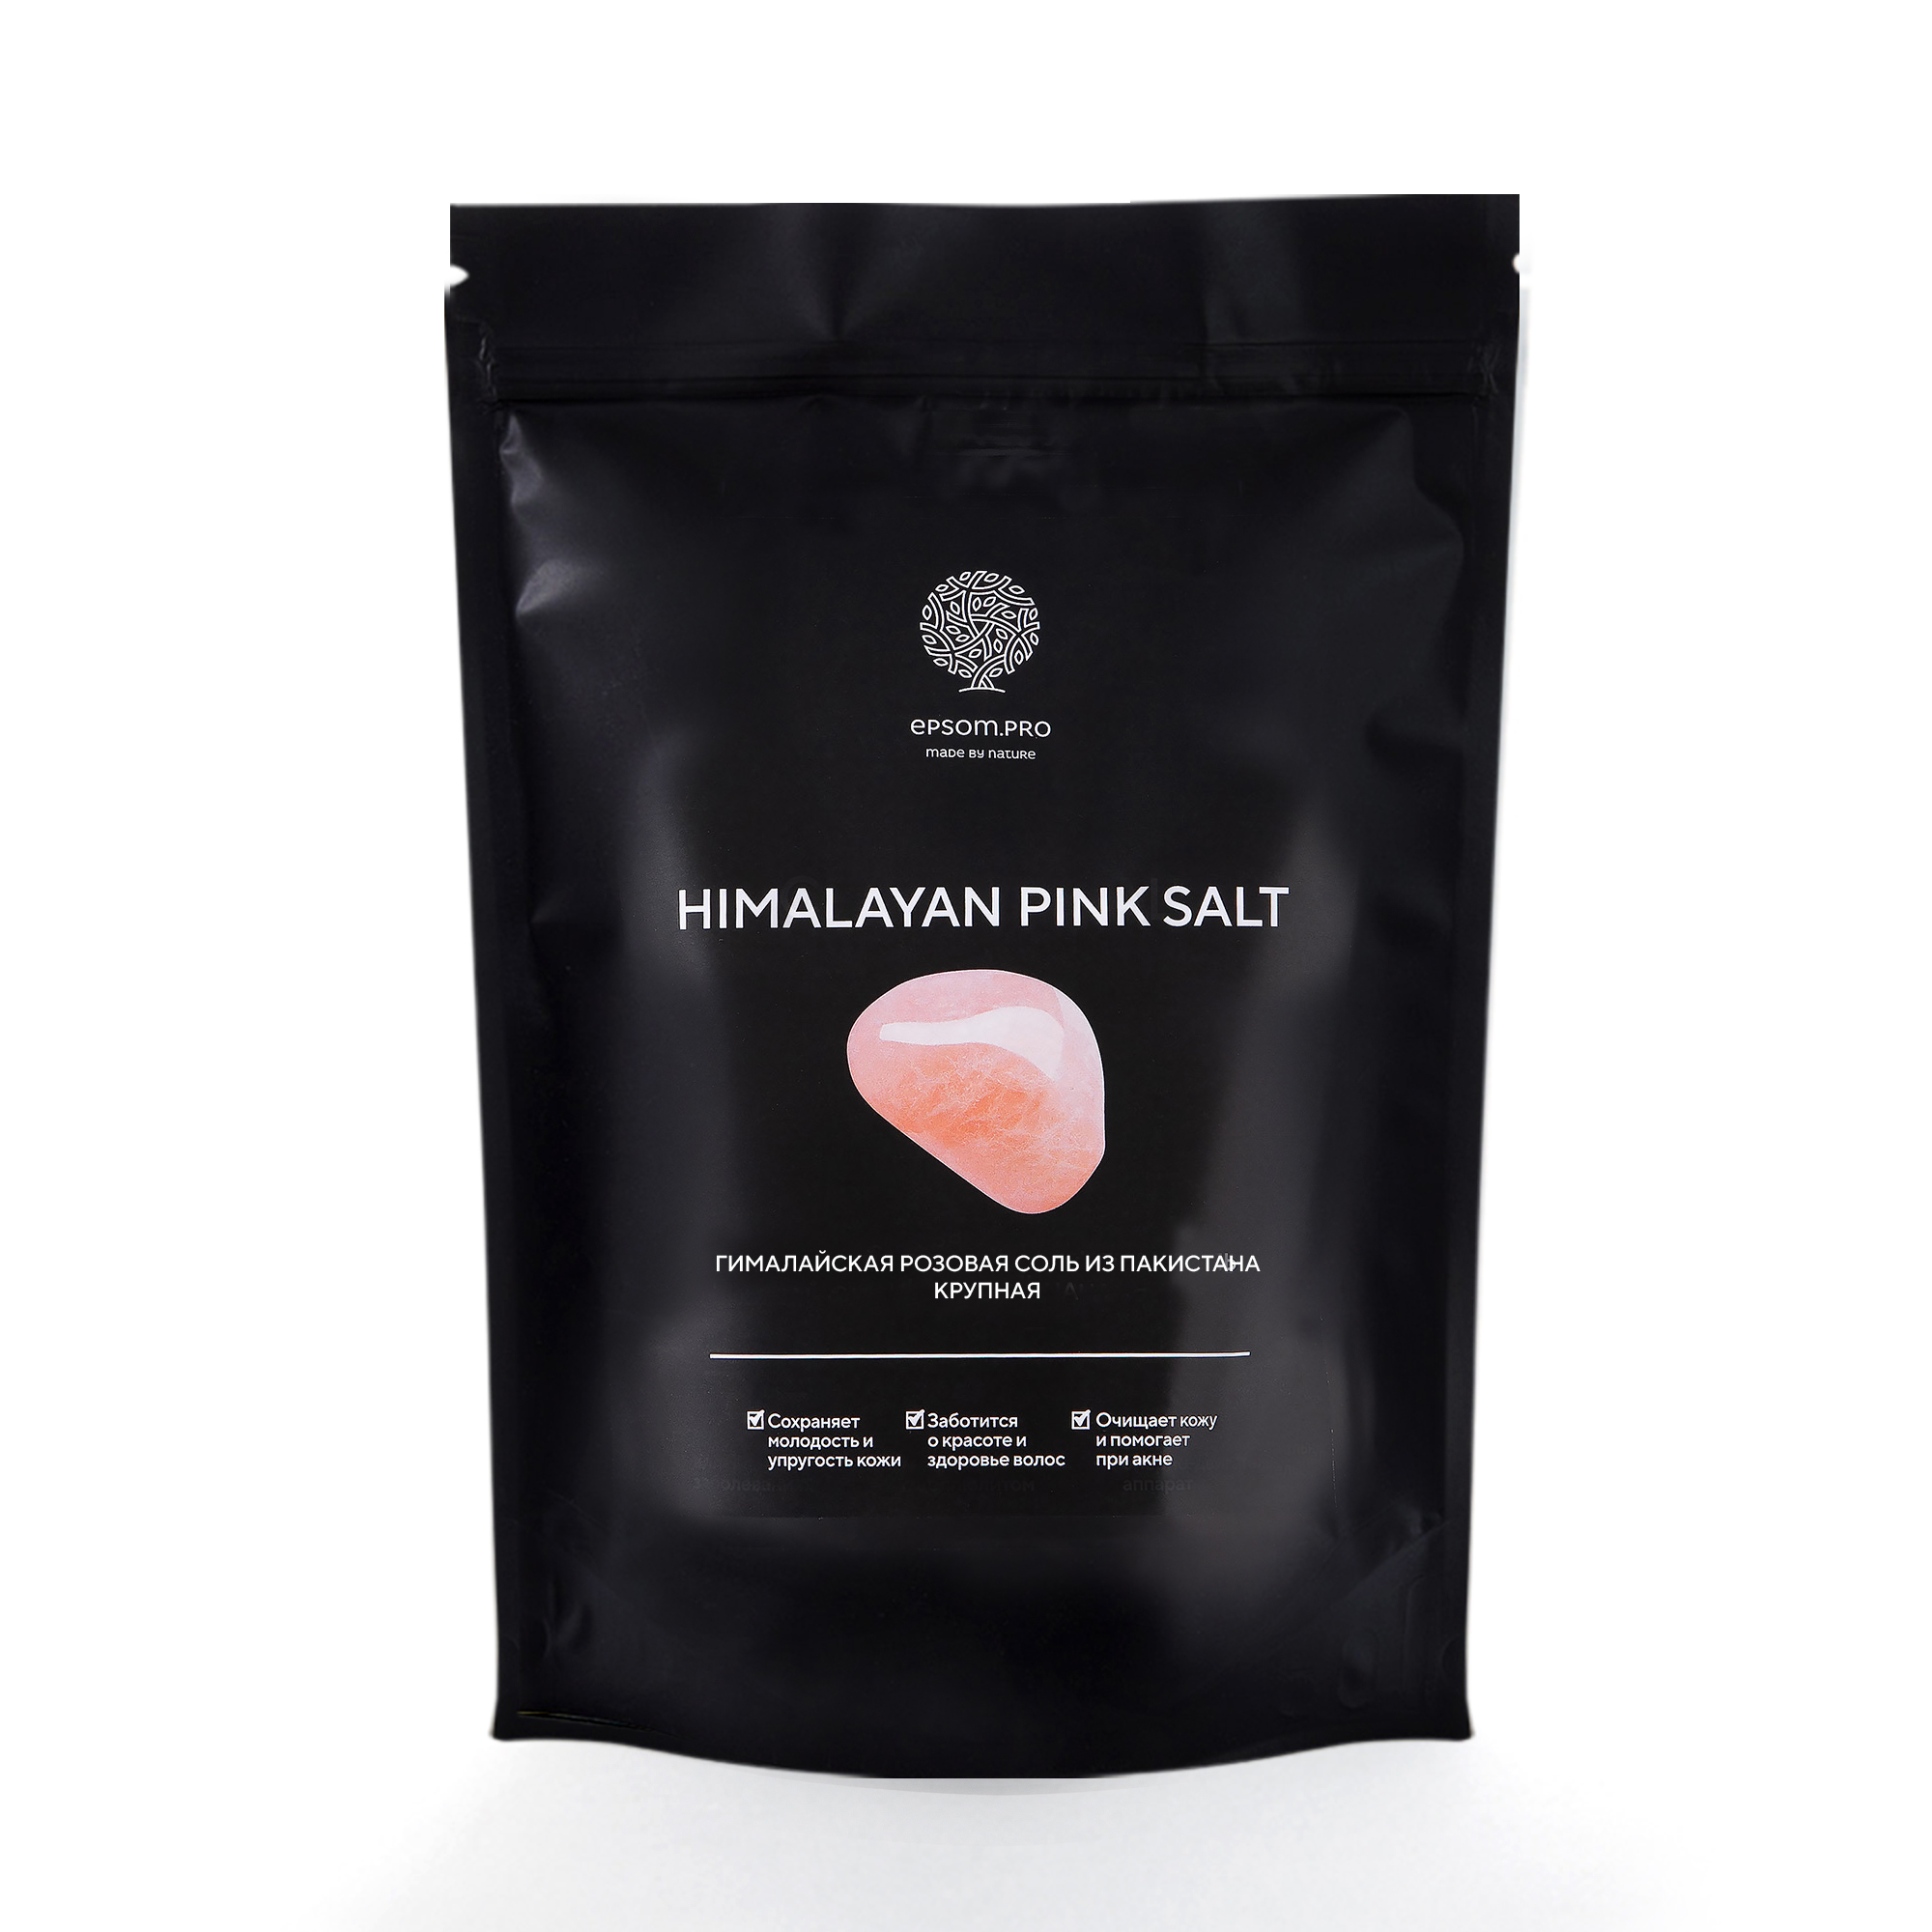 Гималайская розовая соль HYMALAYAN PINK SALT крупная 2,5 кг lunar lab himalayan pink salt гималайская розовая соль банка 3 кг